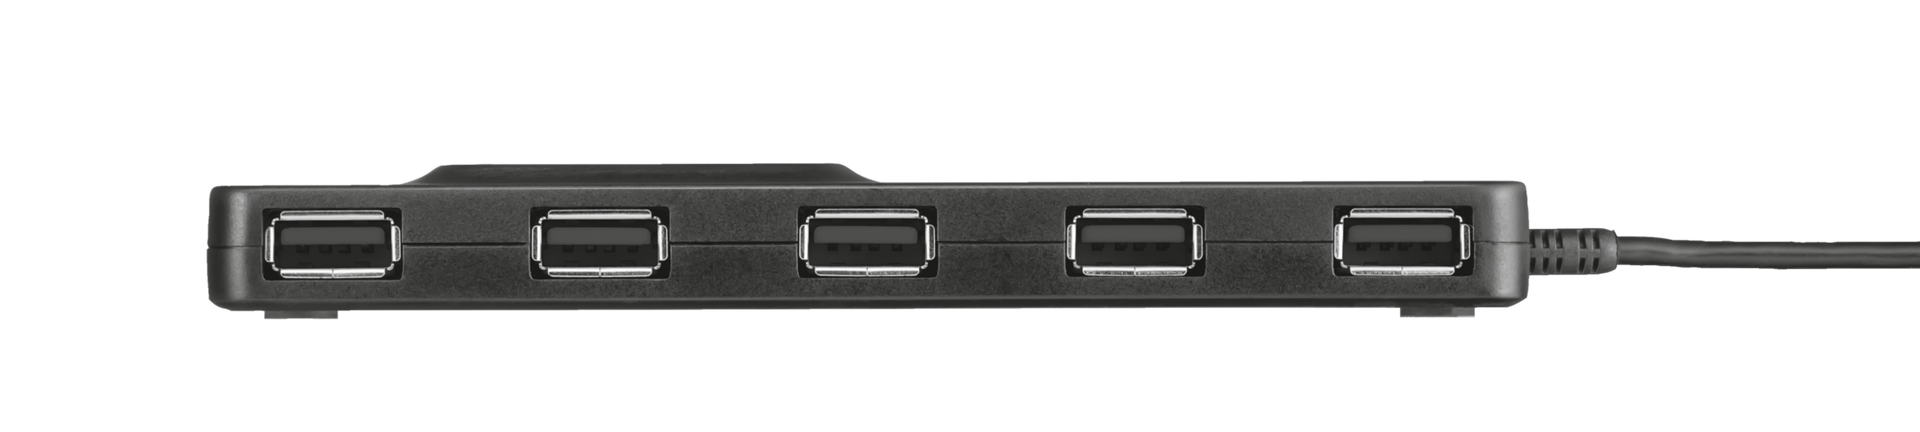 UHB-217 7 Port USB 2.0 Hub-Side